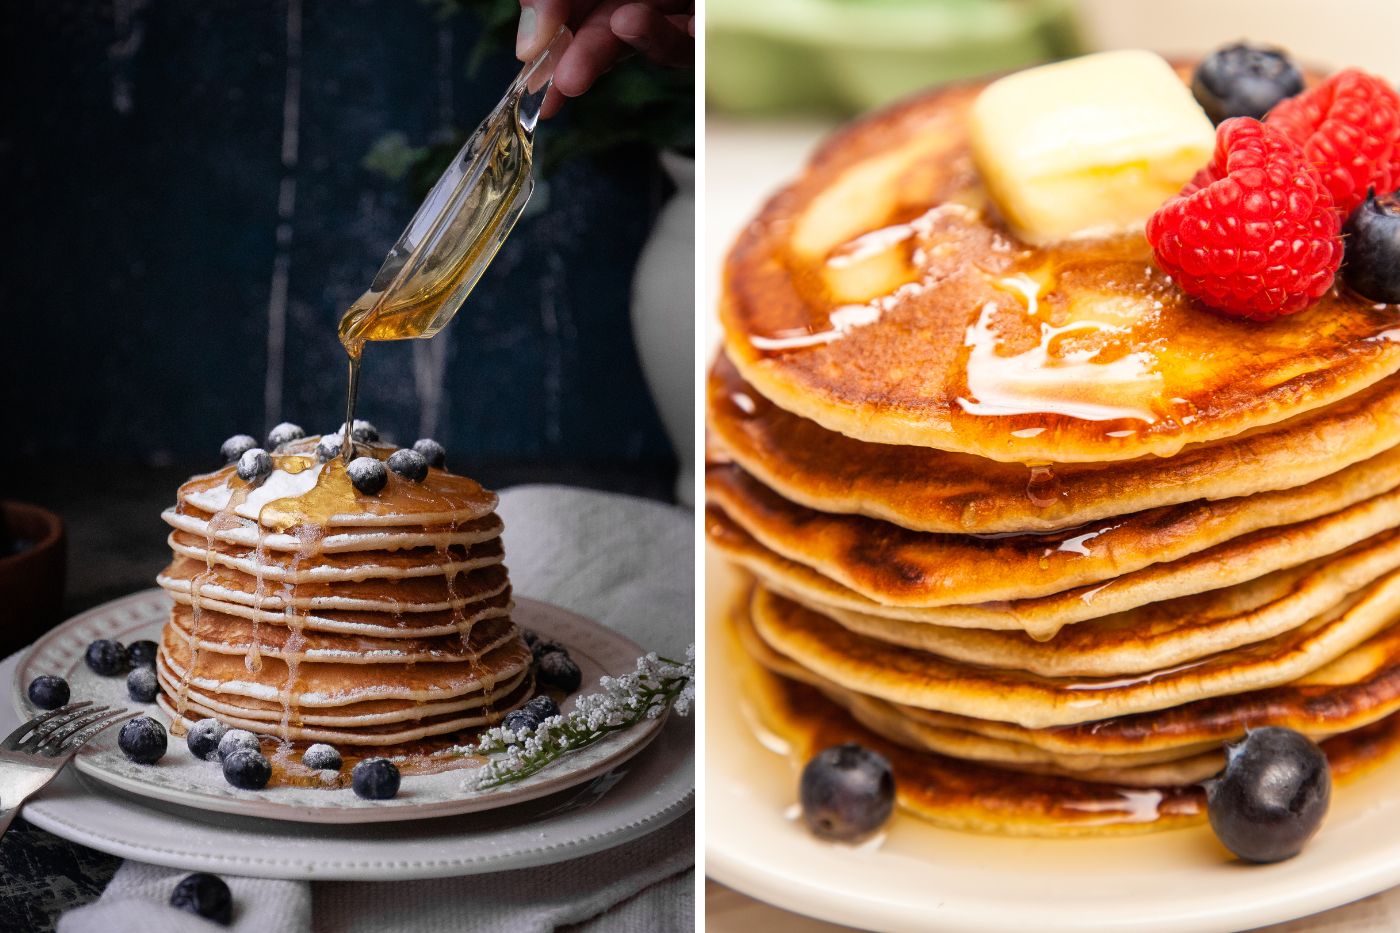 hotcakes vs pancakes